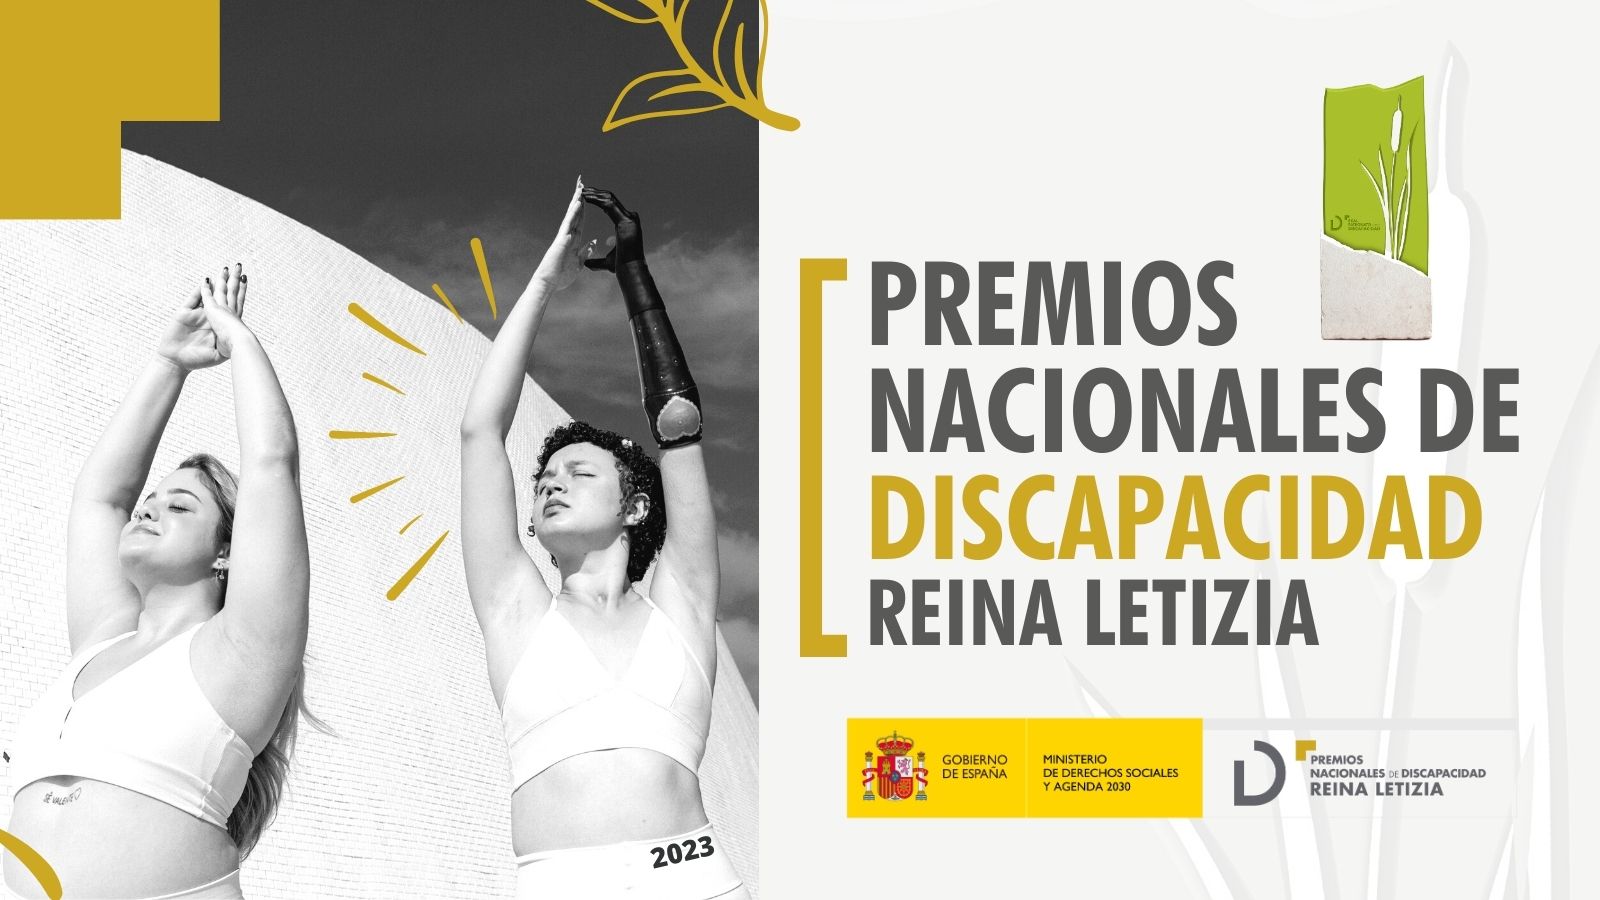 Premios Nacionales de Discapacidad Reina Letizia 2023